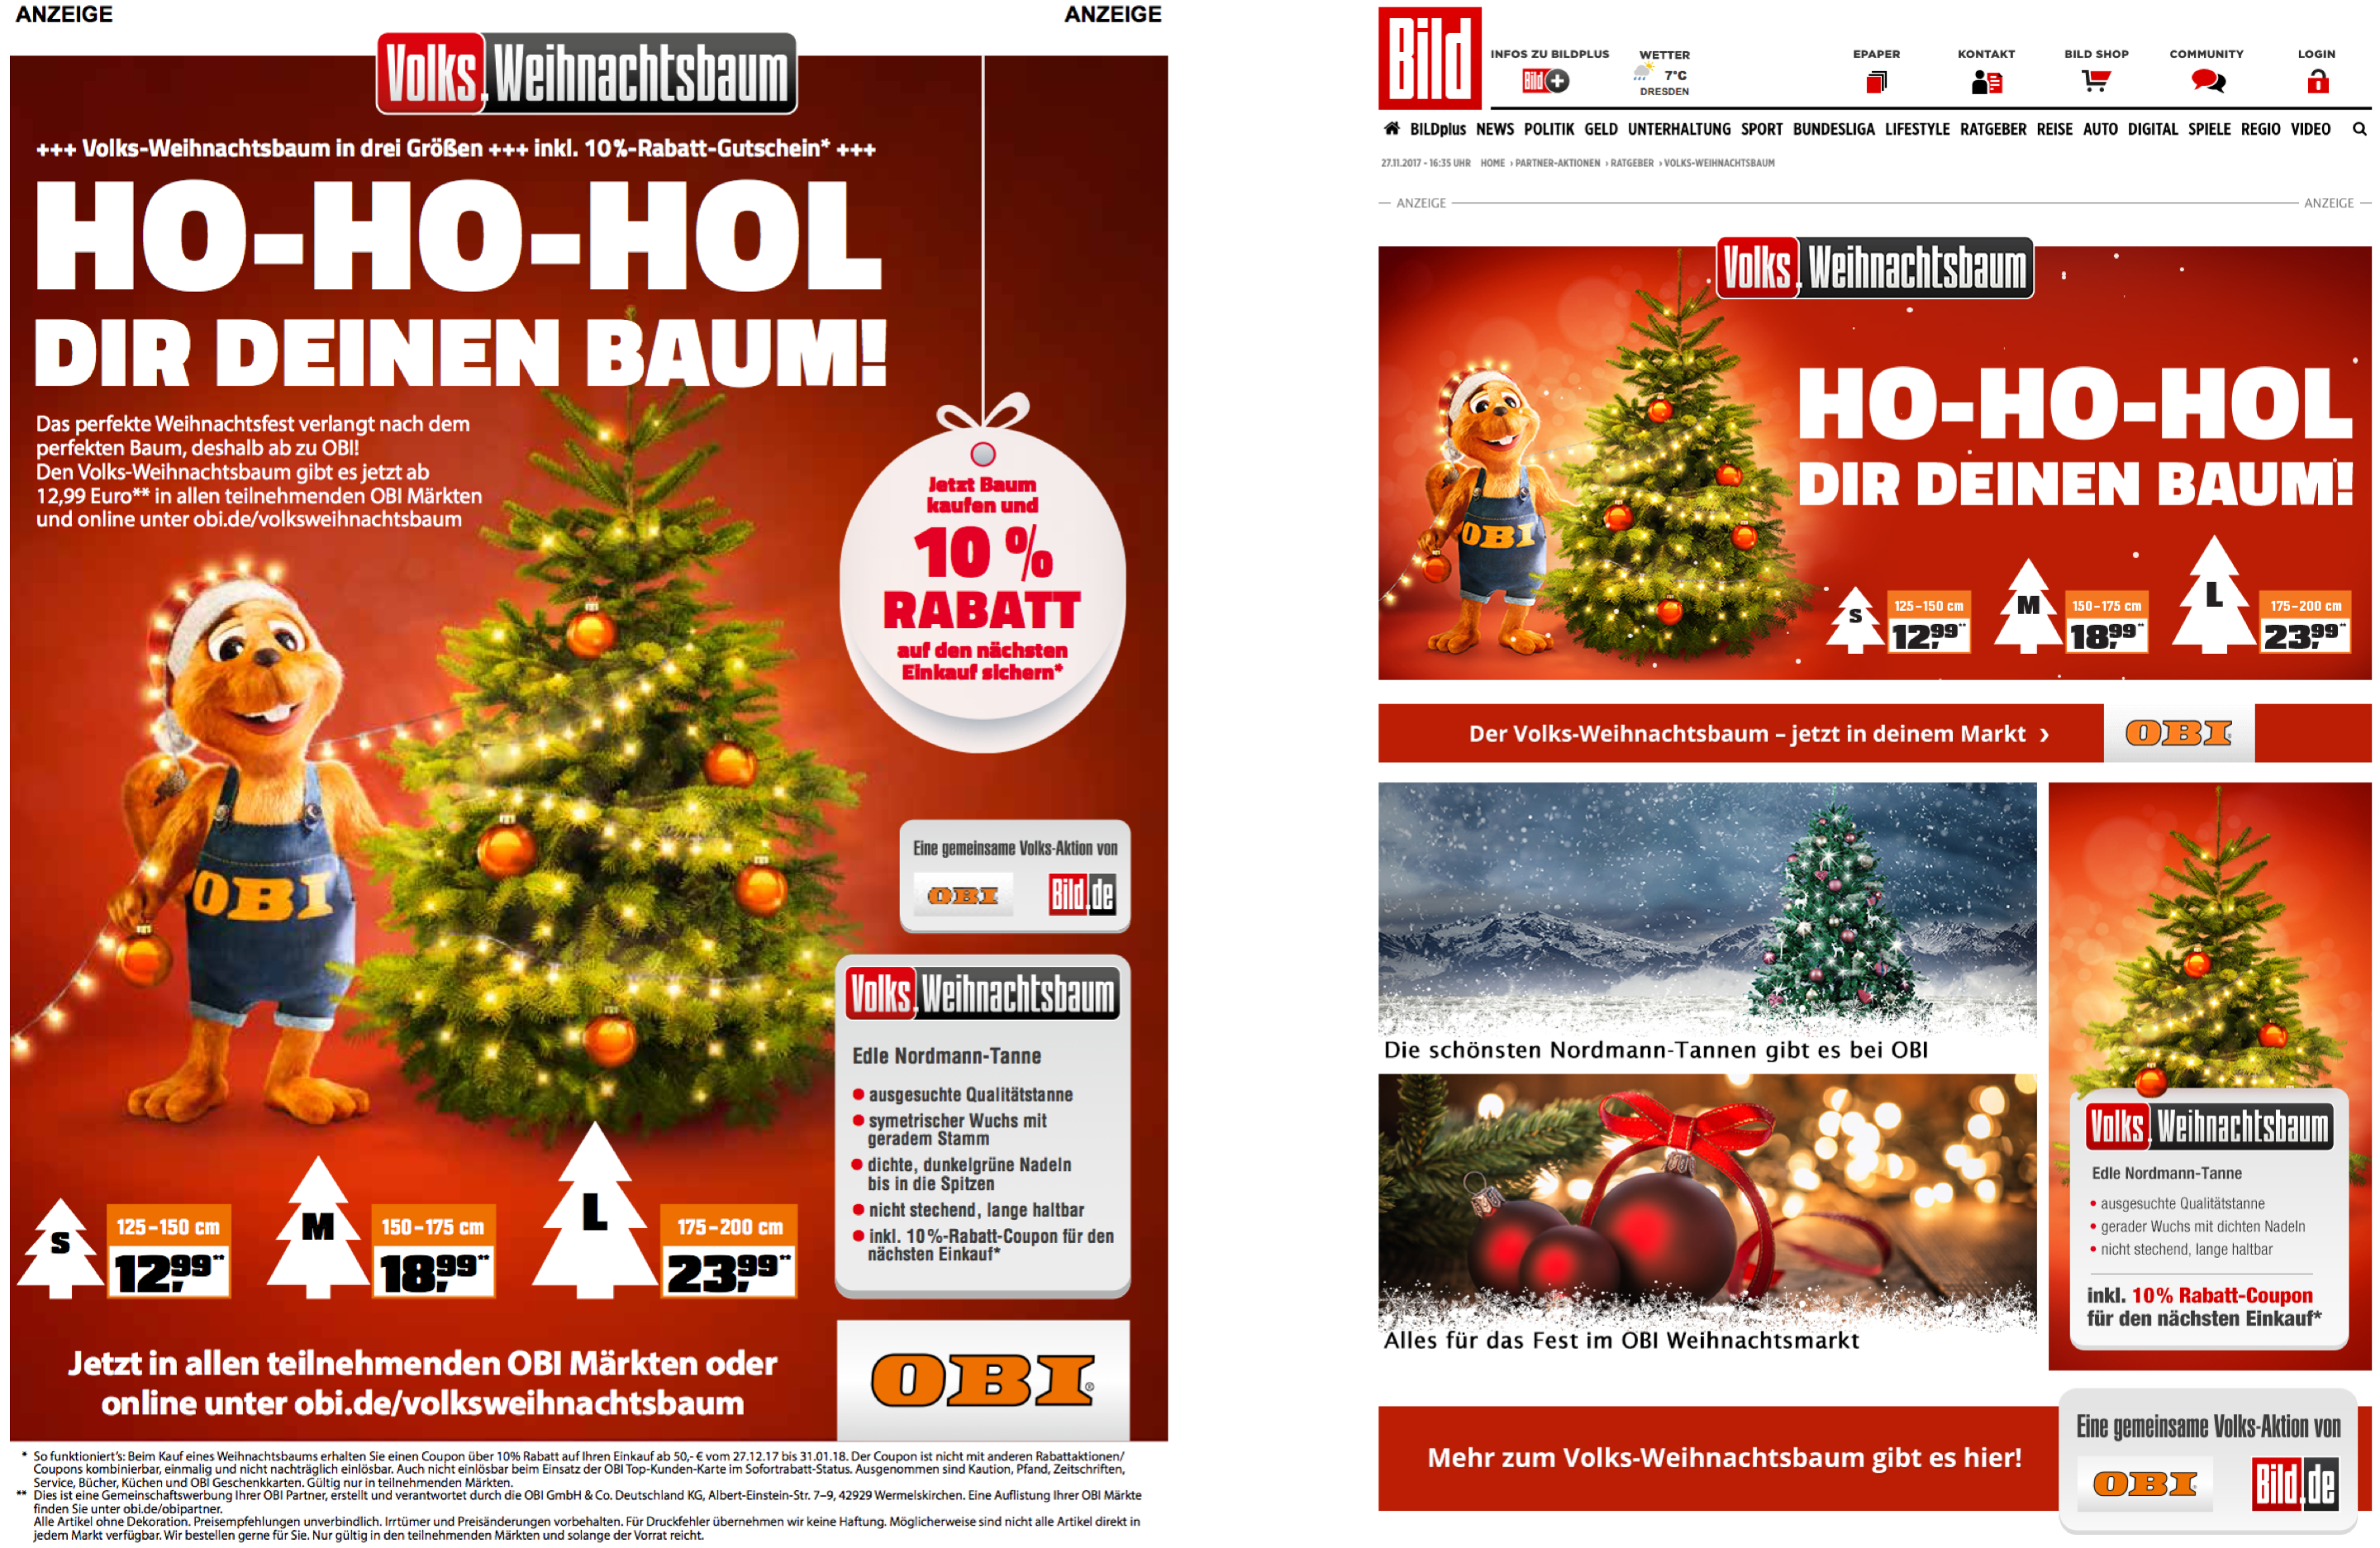 1.000er-Format in BILD und Online-Aktionsbühne auf BILD.de